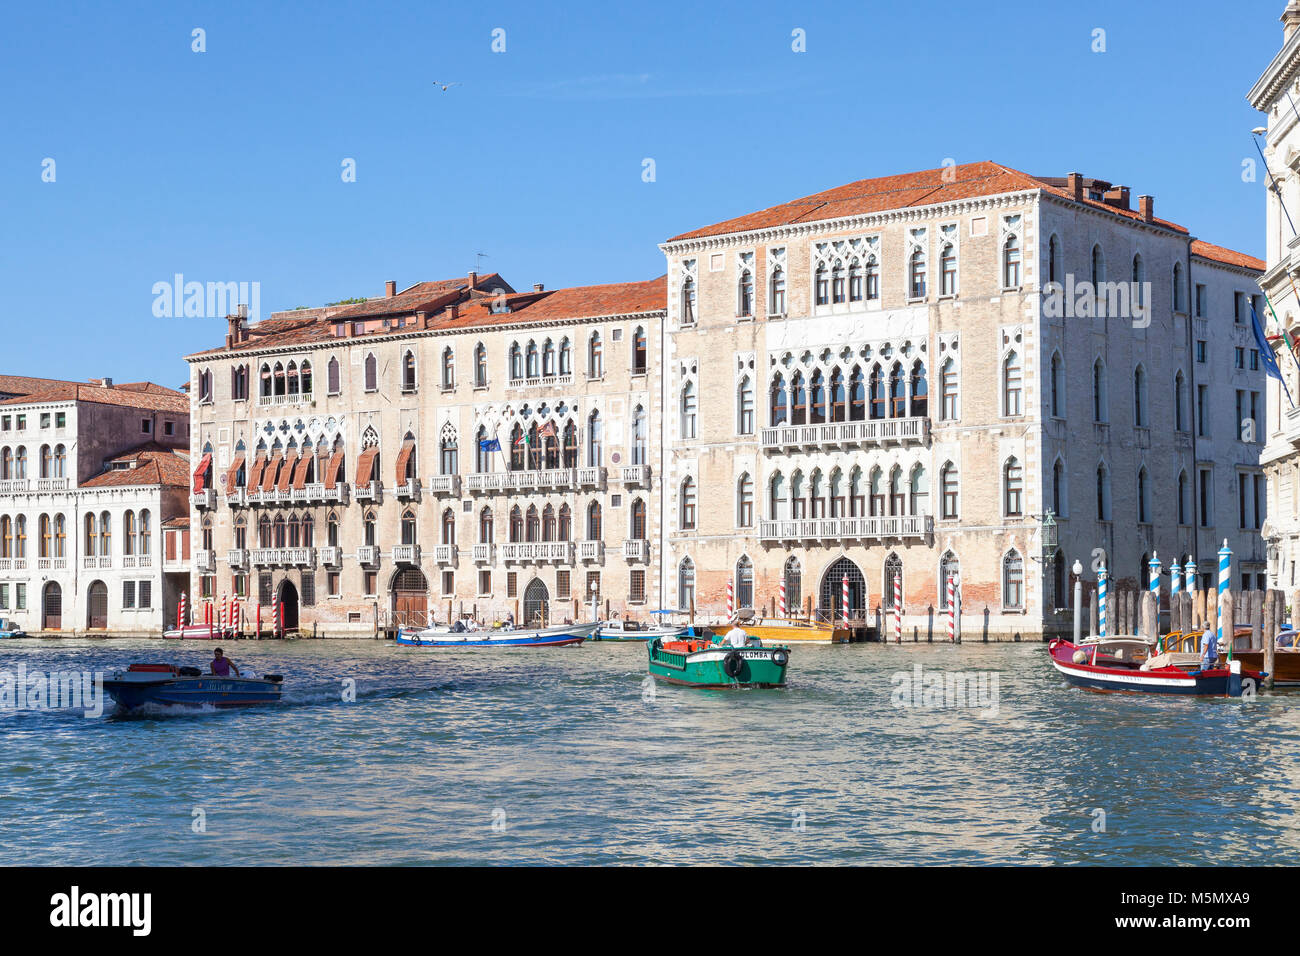 Ca Foscari, Venise, Italie Université du Grand Canal avec voile traffc dans le canal, c'est l'une des plus prestigieuses universités d'Europe, il i Banque D'Images